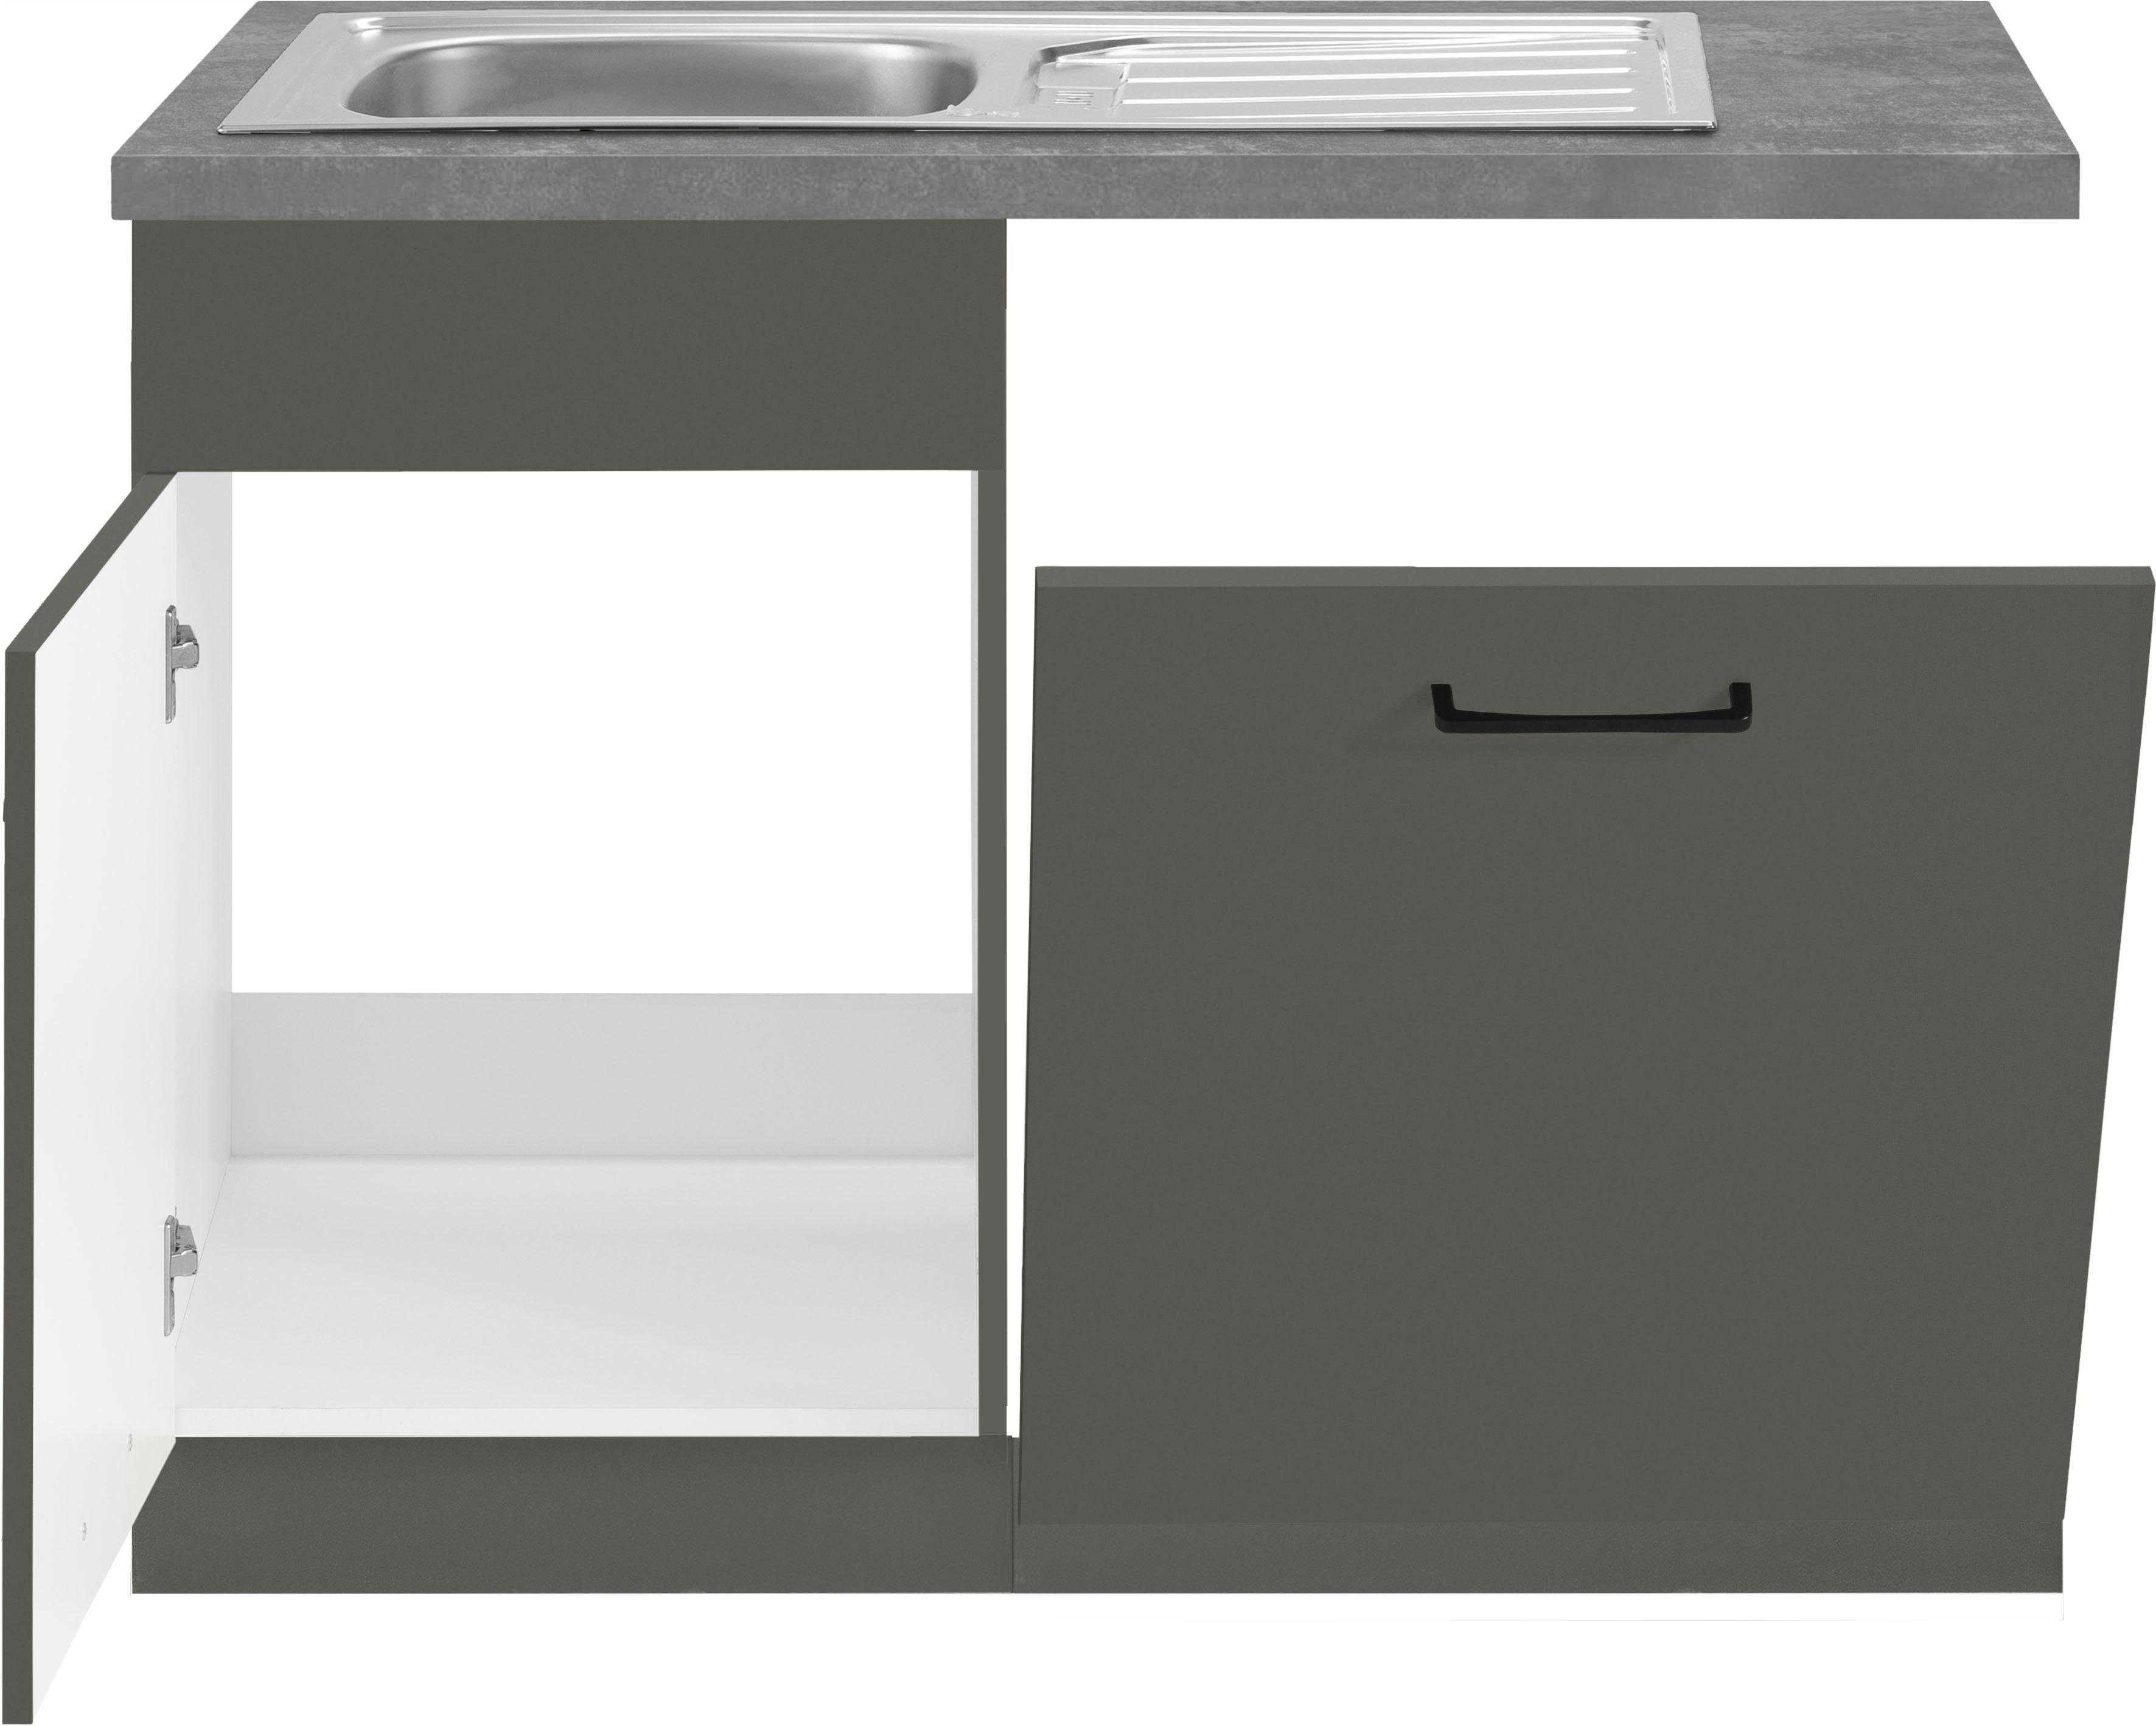 wiho Esbo inkl. Geschirrspüler Tür/Sockel für Spülenschrank cm 110 Küchen breit,